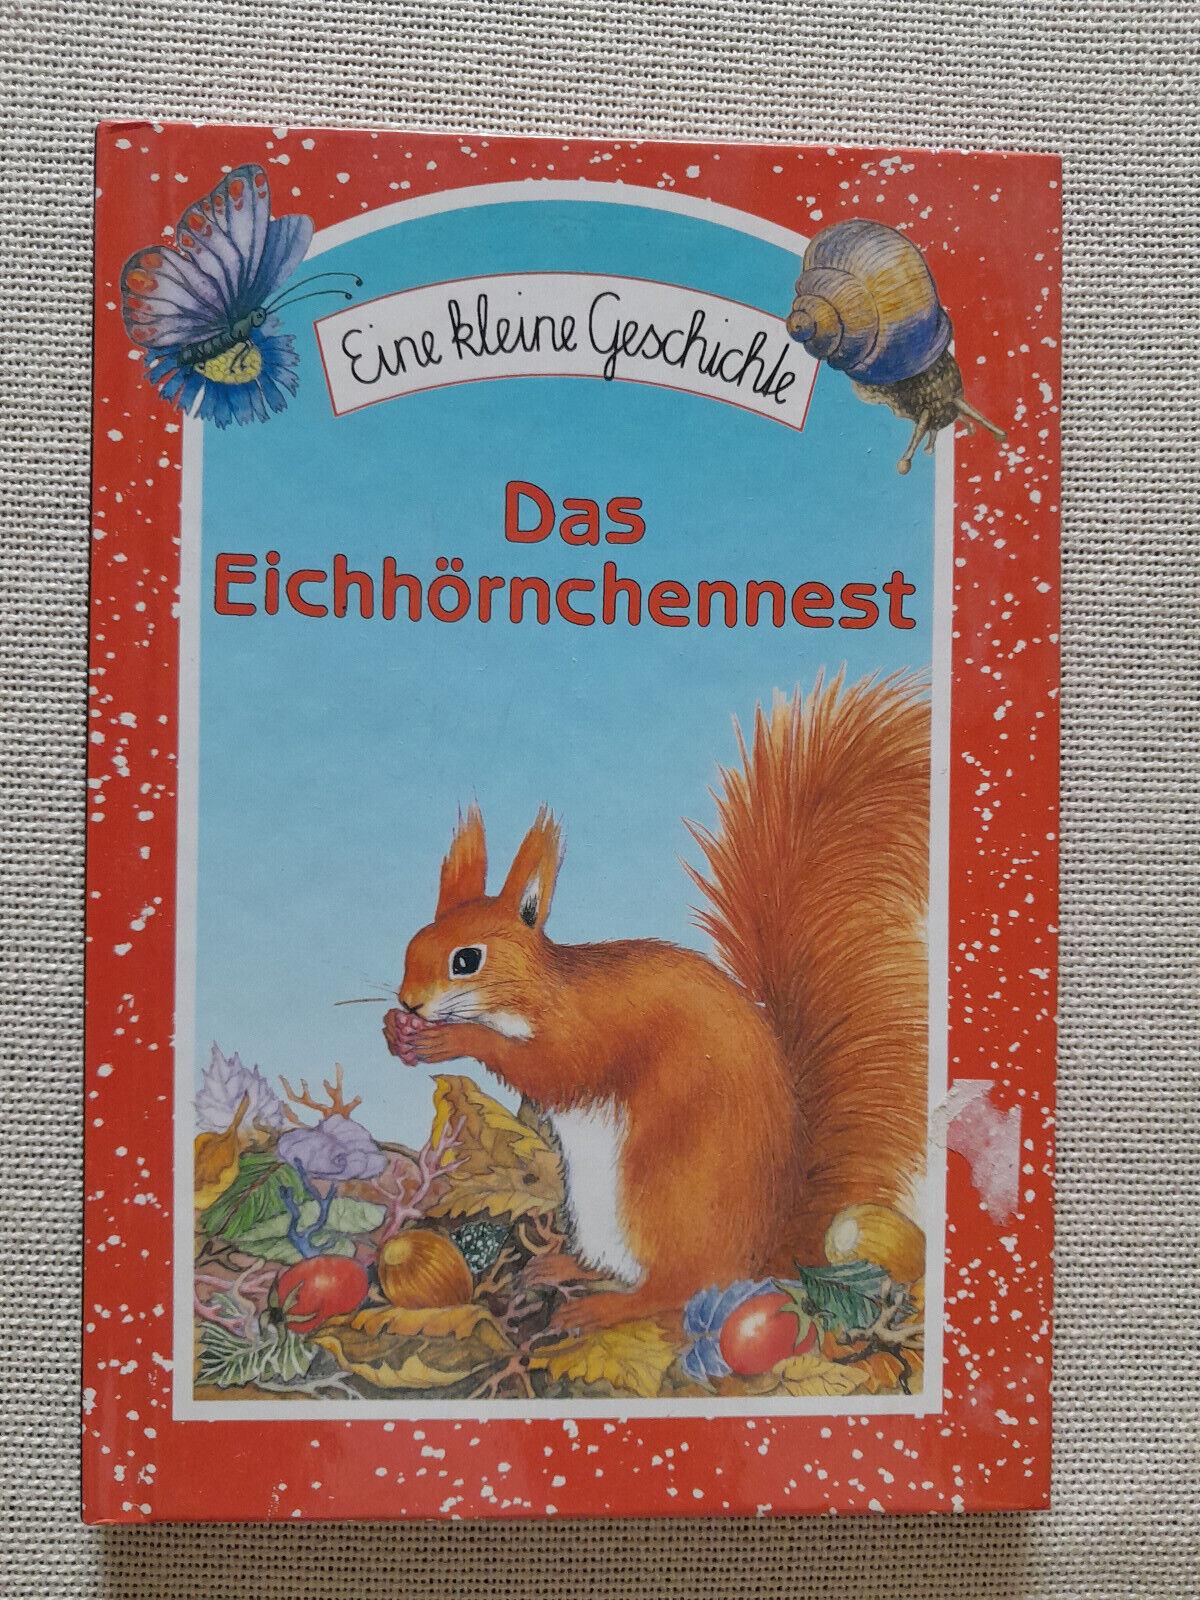 Kinderbuch Eine kleine Geschichte * Das Eichhörnchennest * Neu und ungelesen - Unbekannt